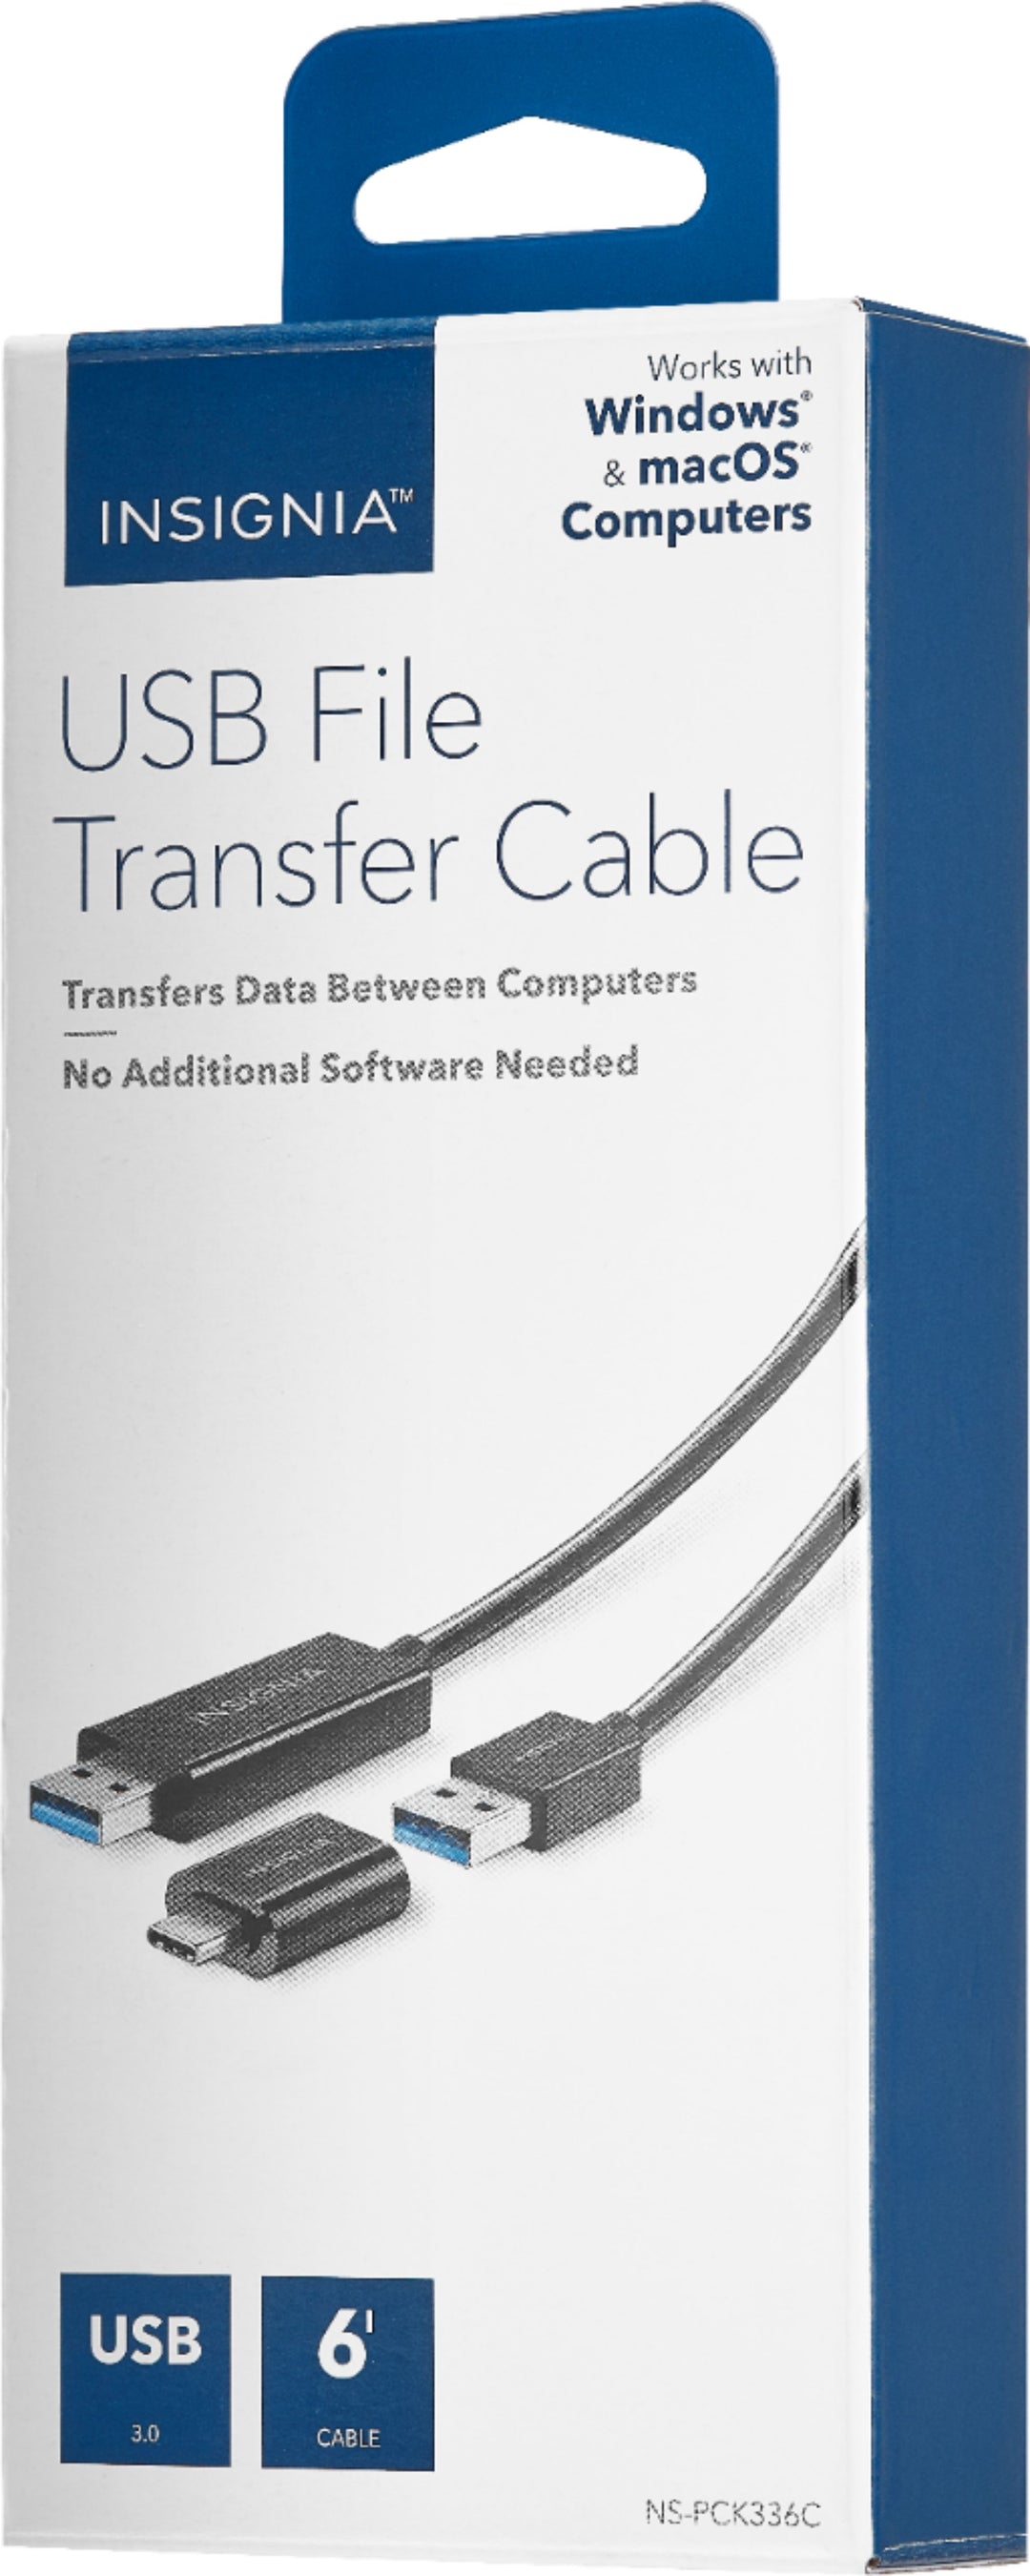 Insignia™ - 6' USB 3.0 File Transfer Cable - Black_1